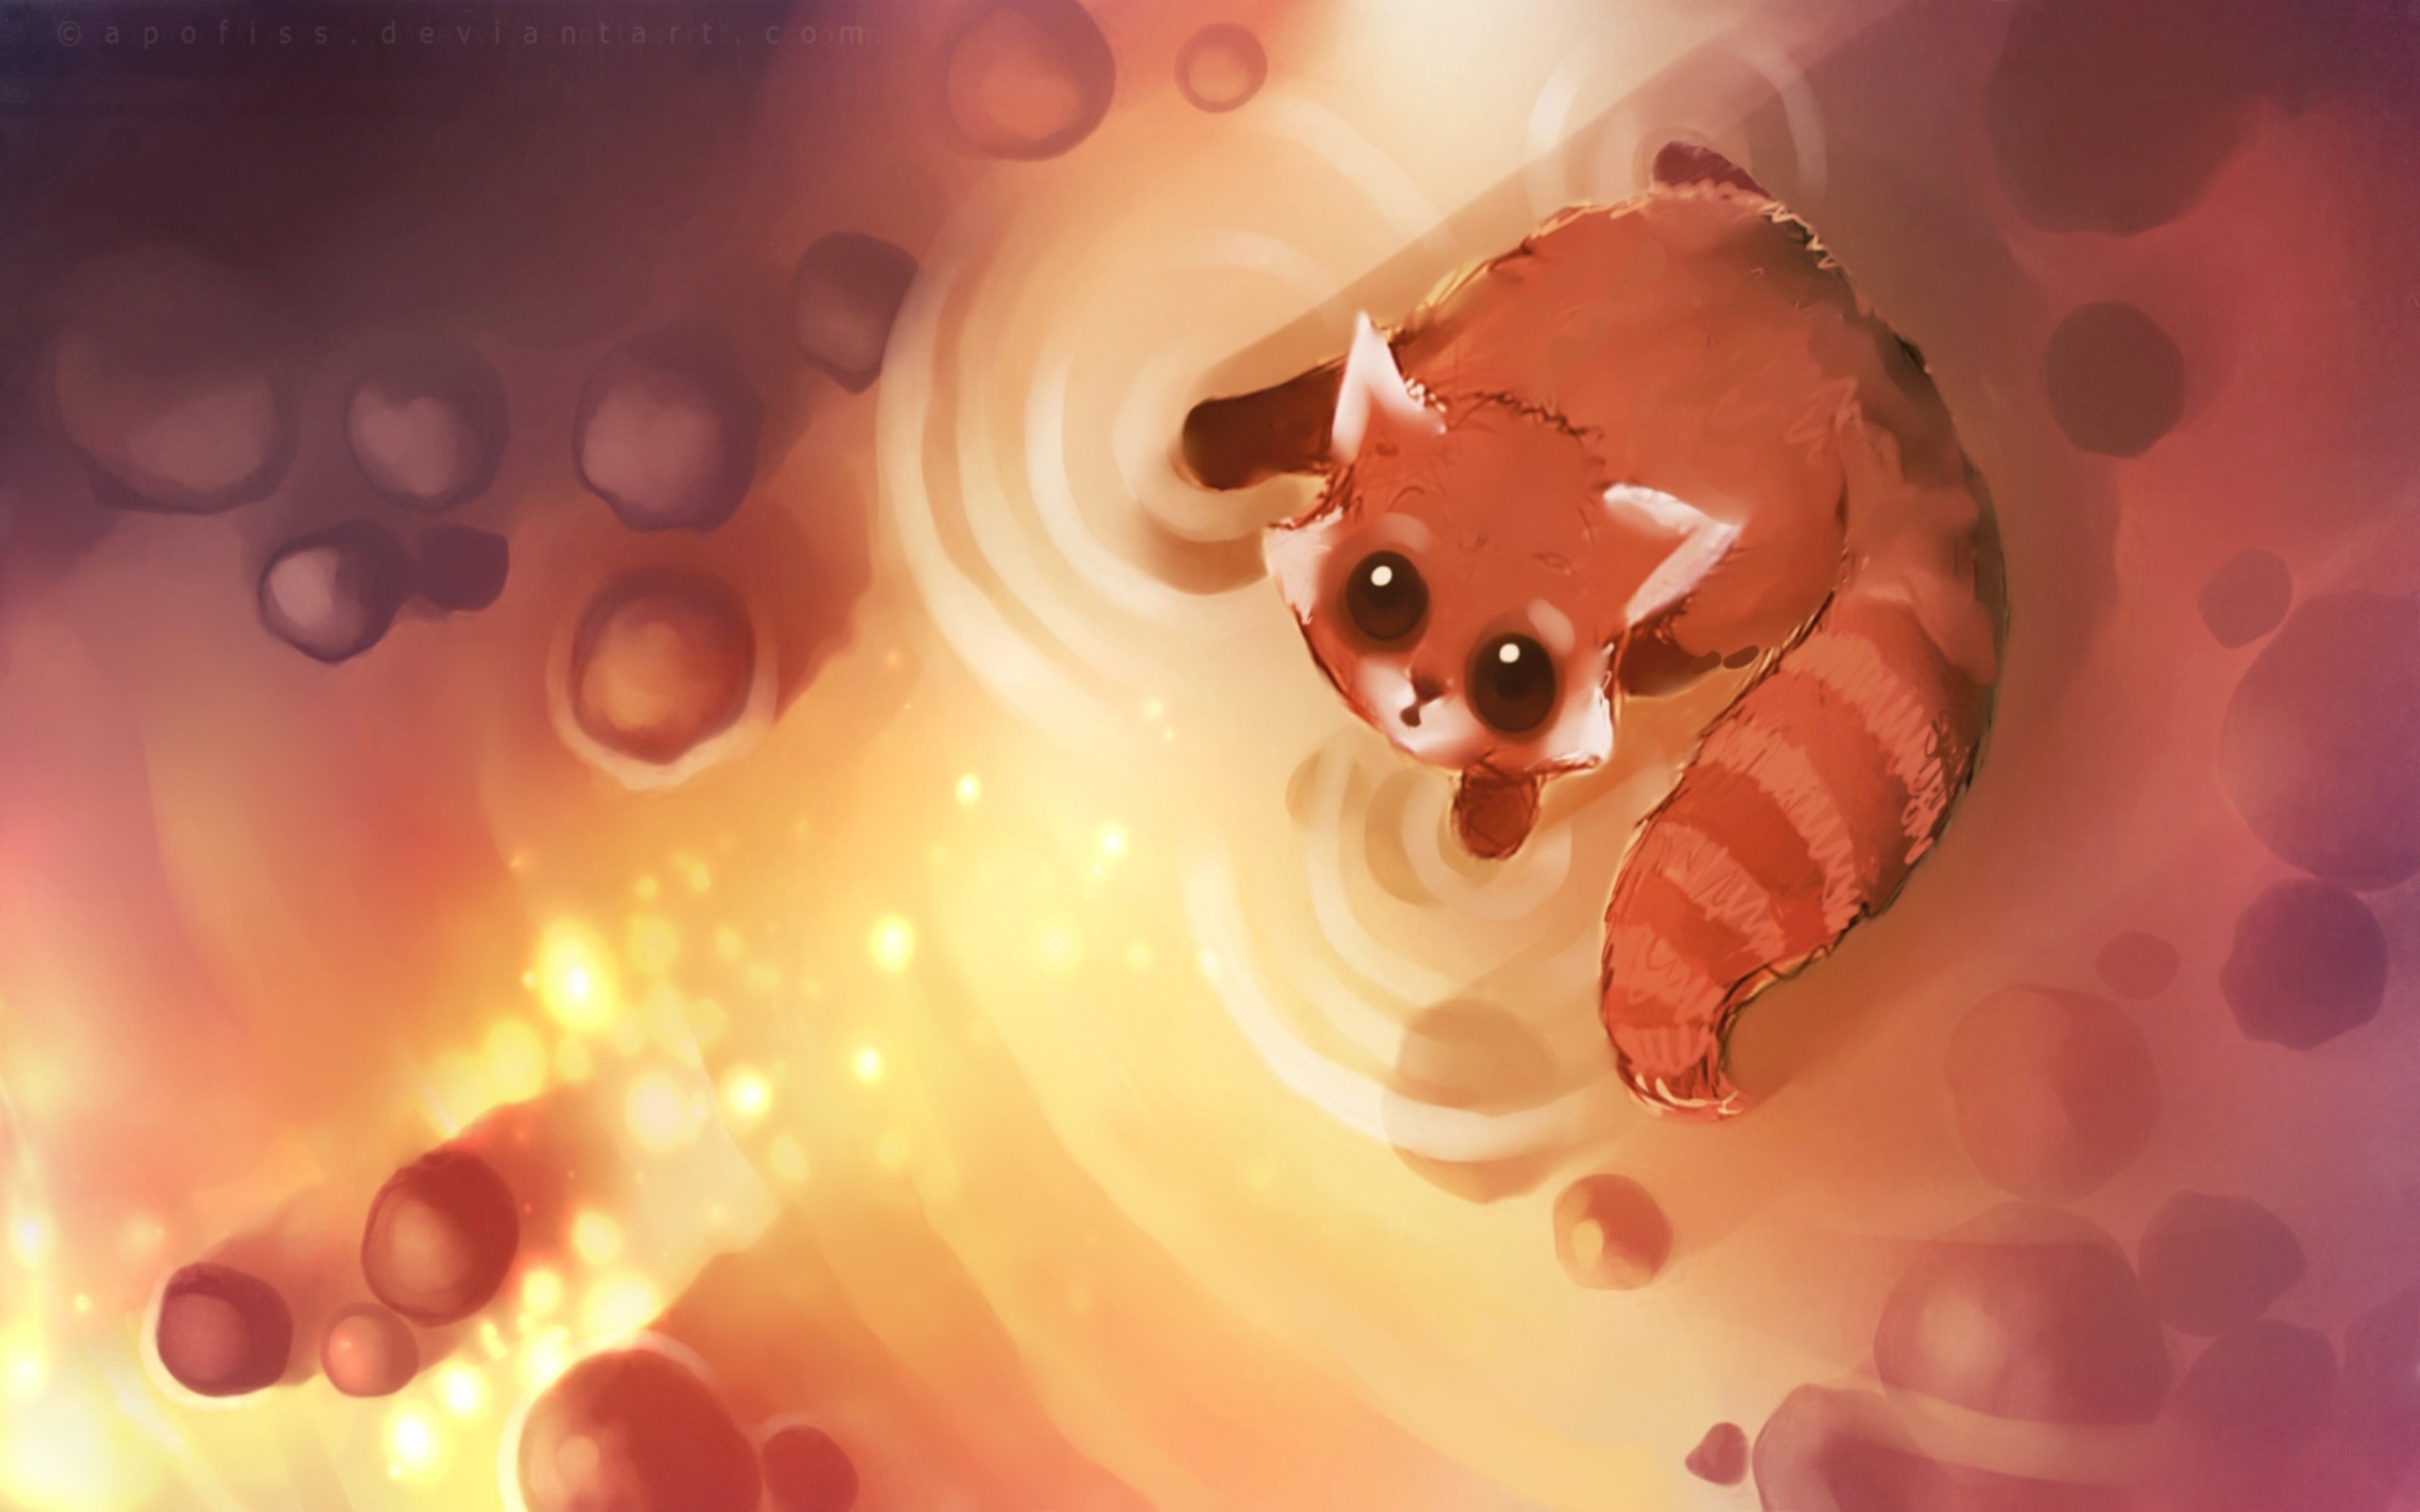 red panda 1080P, 2k, 4k HD wallpaper, background free download